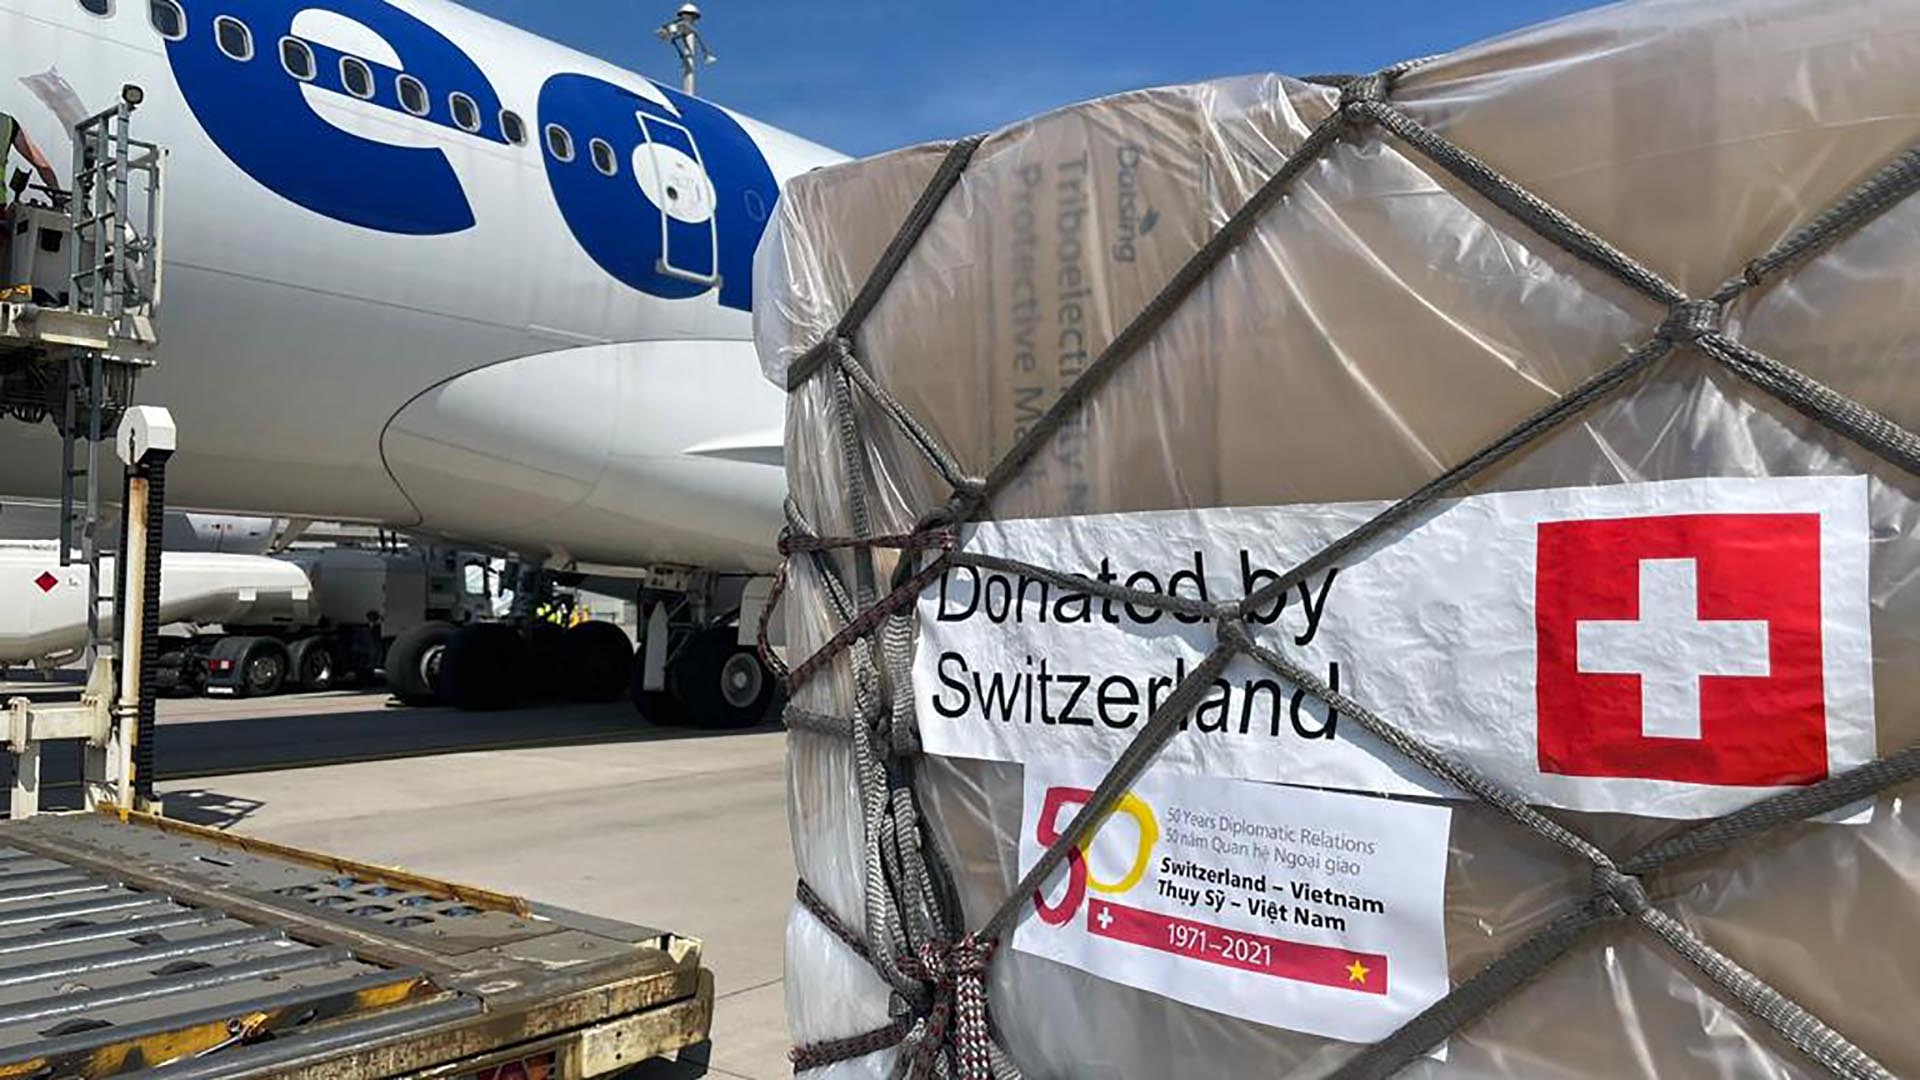 Chuyến hàng viện trợ khẩn cấp trang thiết bị y tế của Thụy Sỹ dành cho Việt Nam rời sân bay Zurich